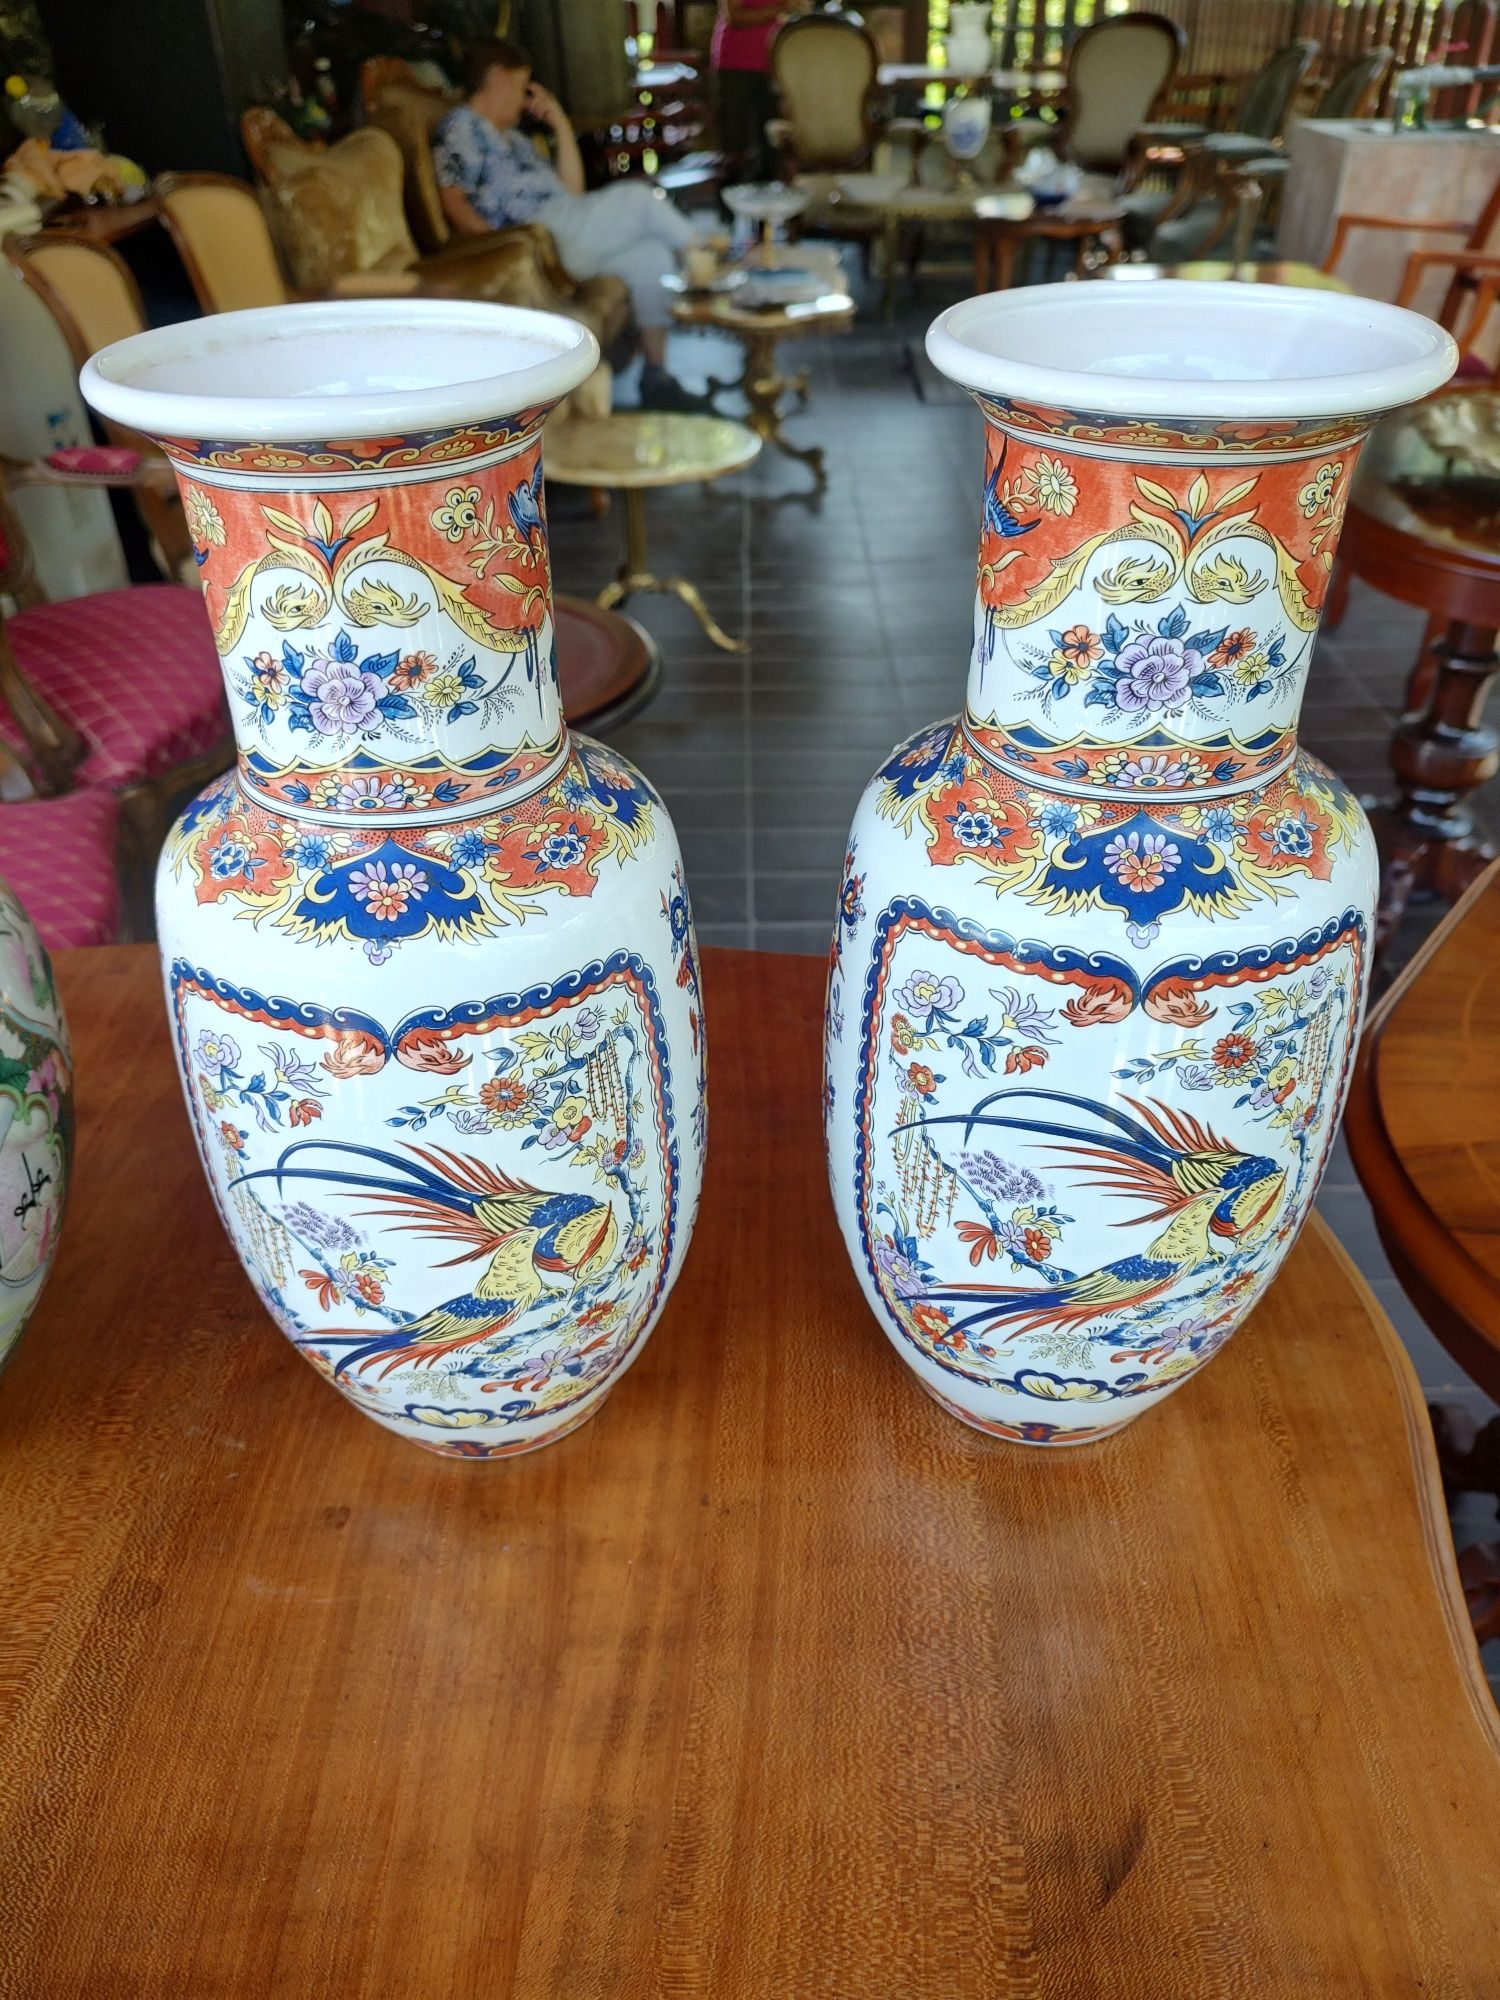 De vânzare pereche de vaze asiatice ștanțate, cu diferite peisaje.
Dim